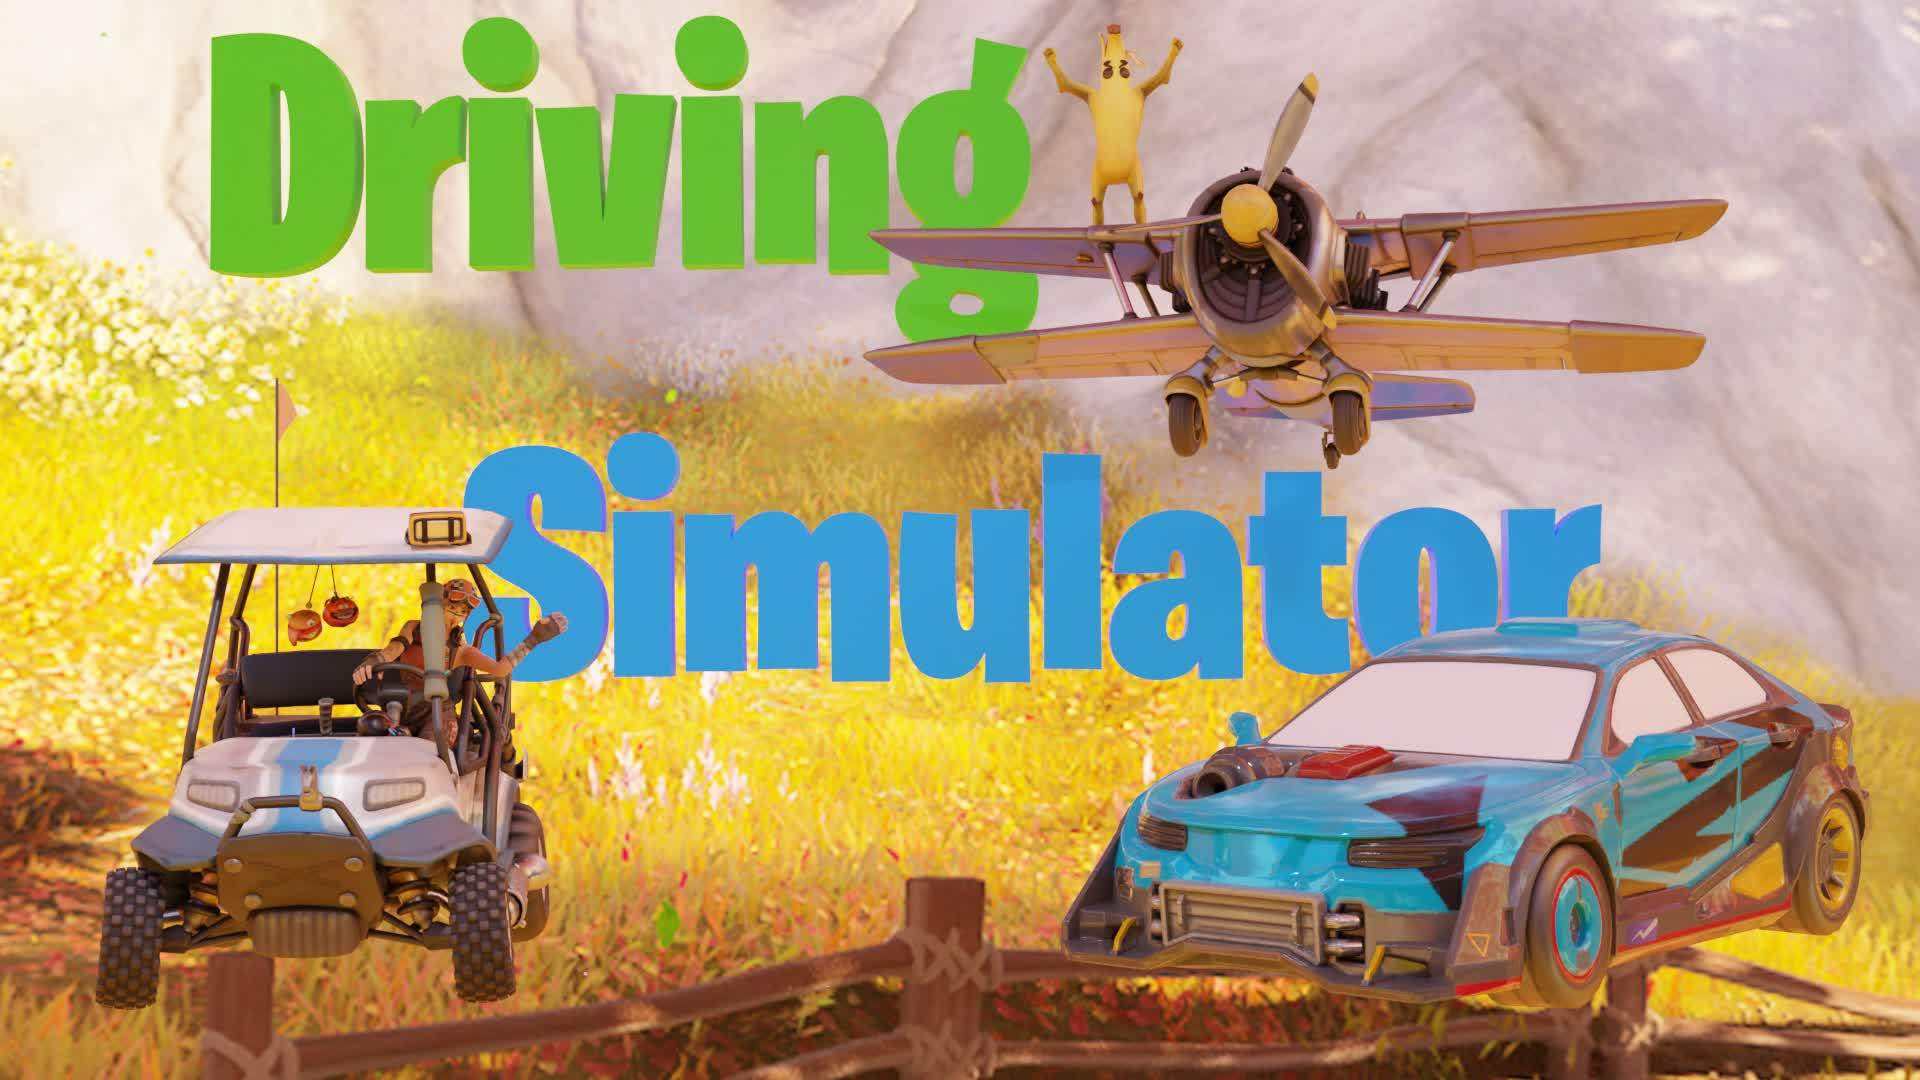 👑 DRIVING SIMULATOR 2.0 - Fortnite Creative Map Code - Dropnite